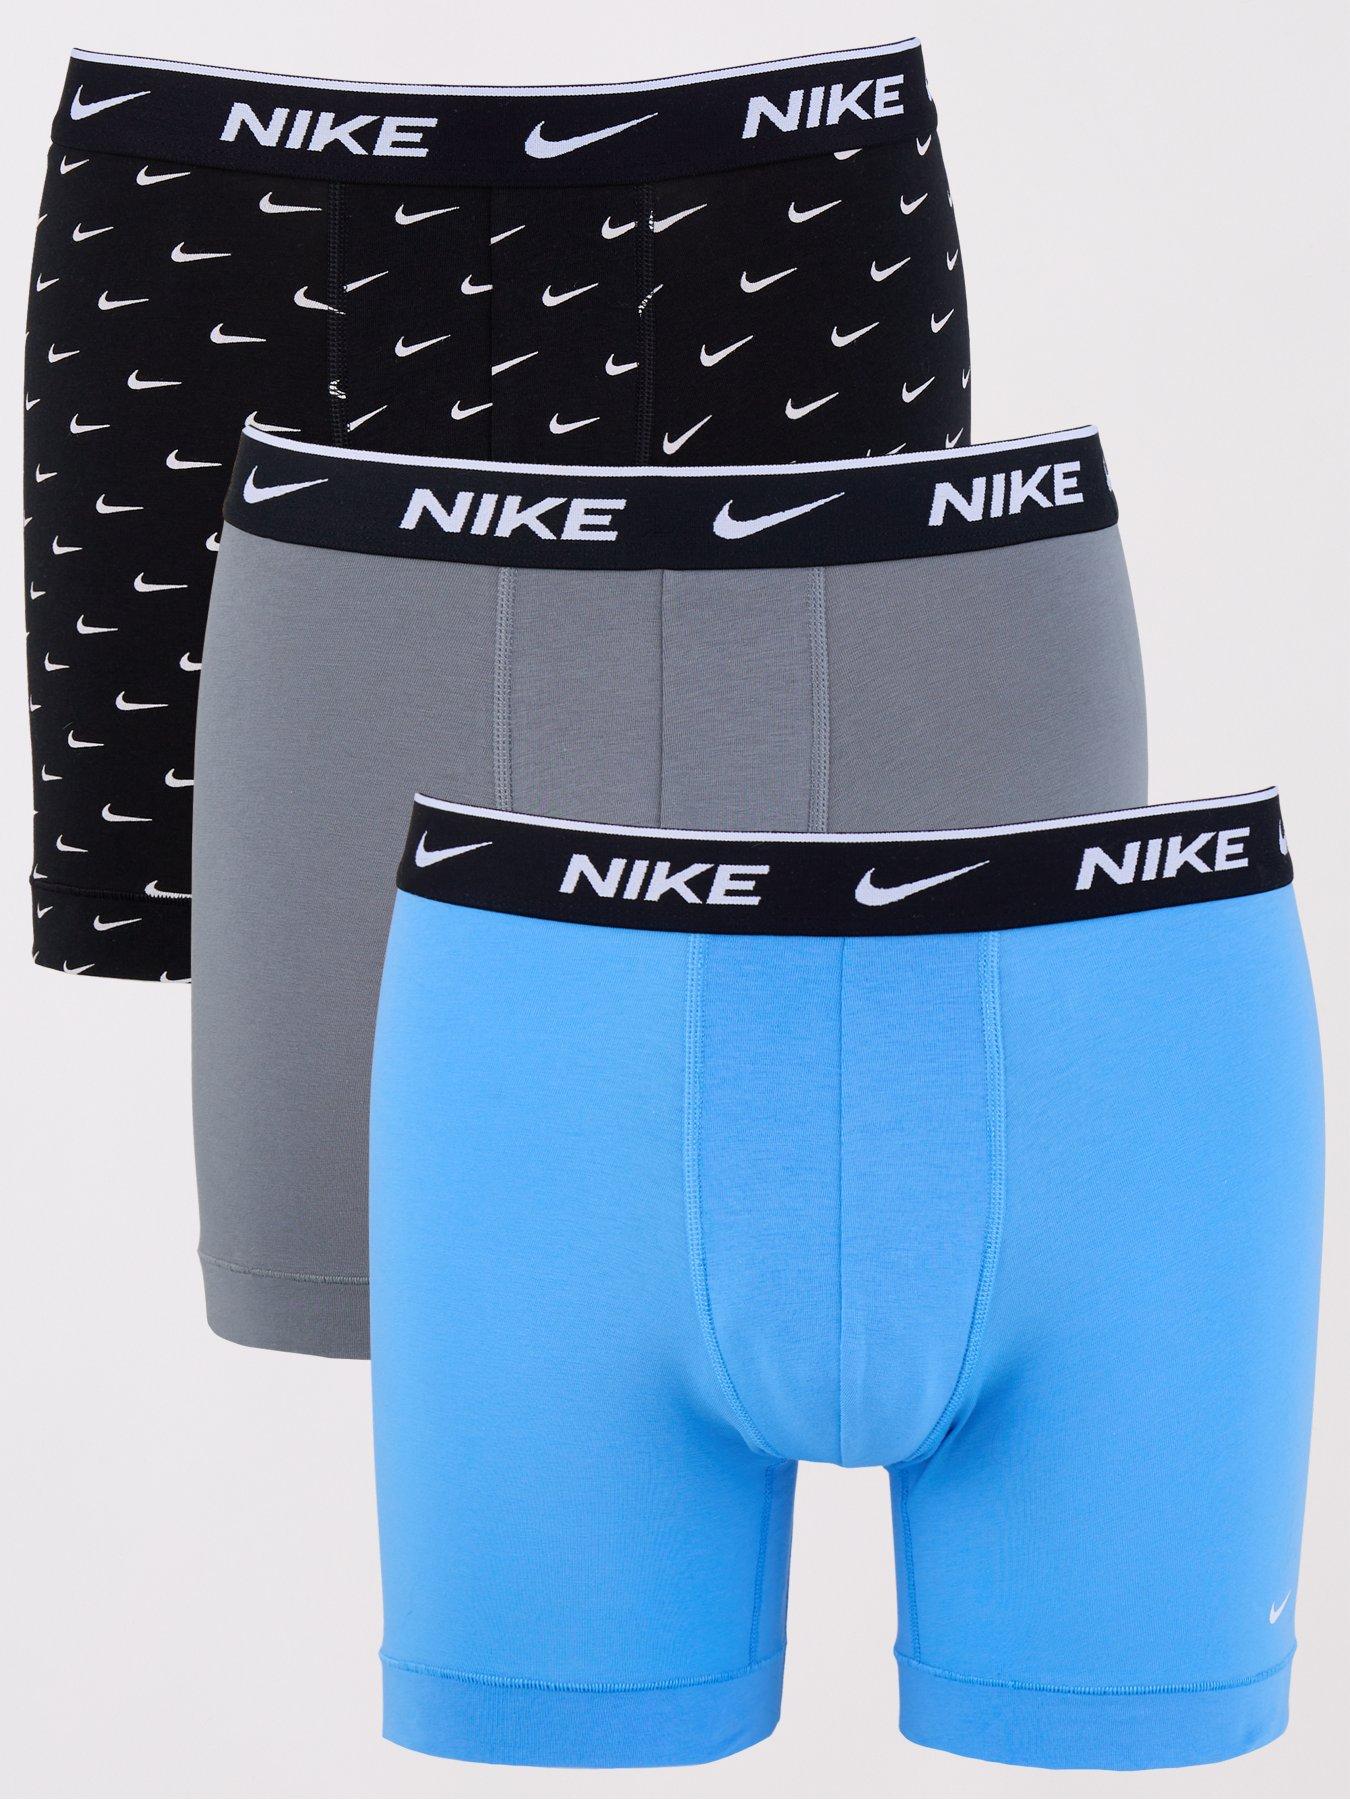 Nike 3 Pack Cotton Stretch Briefs In Black